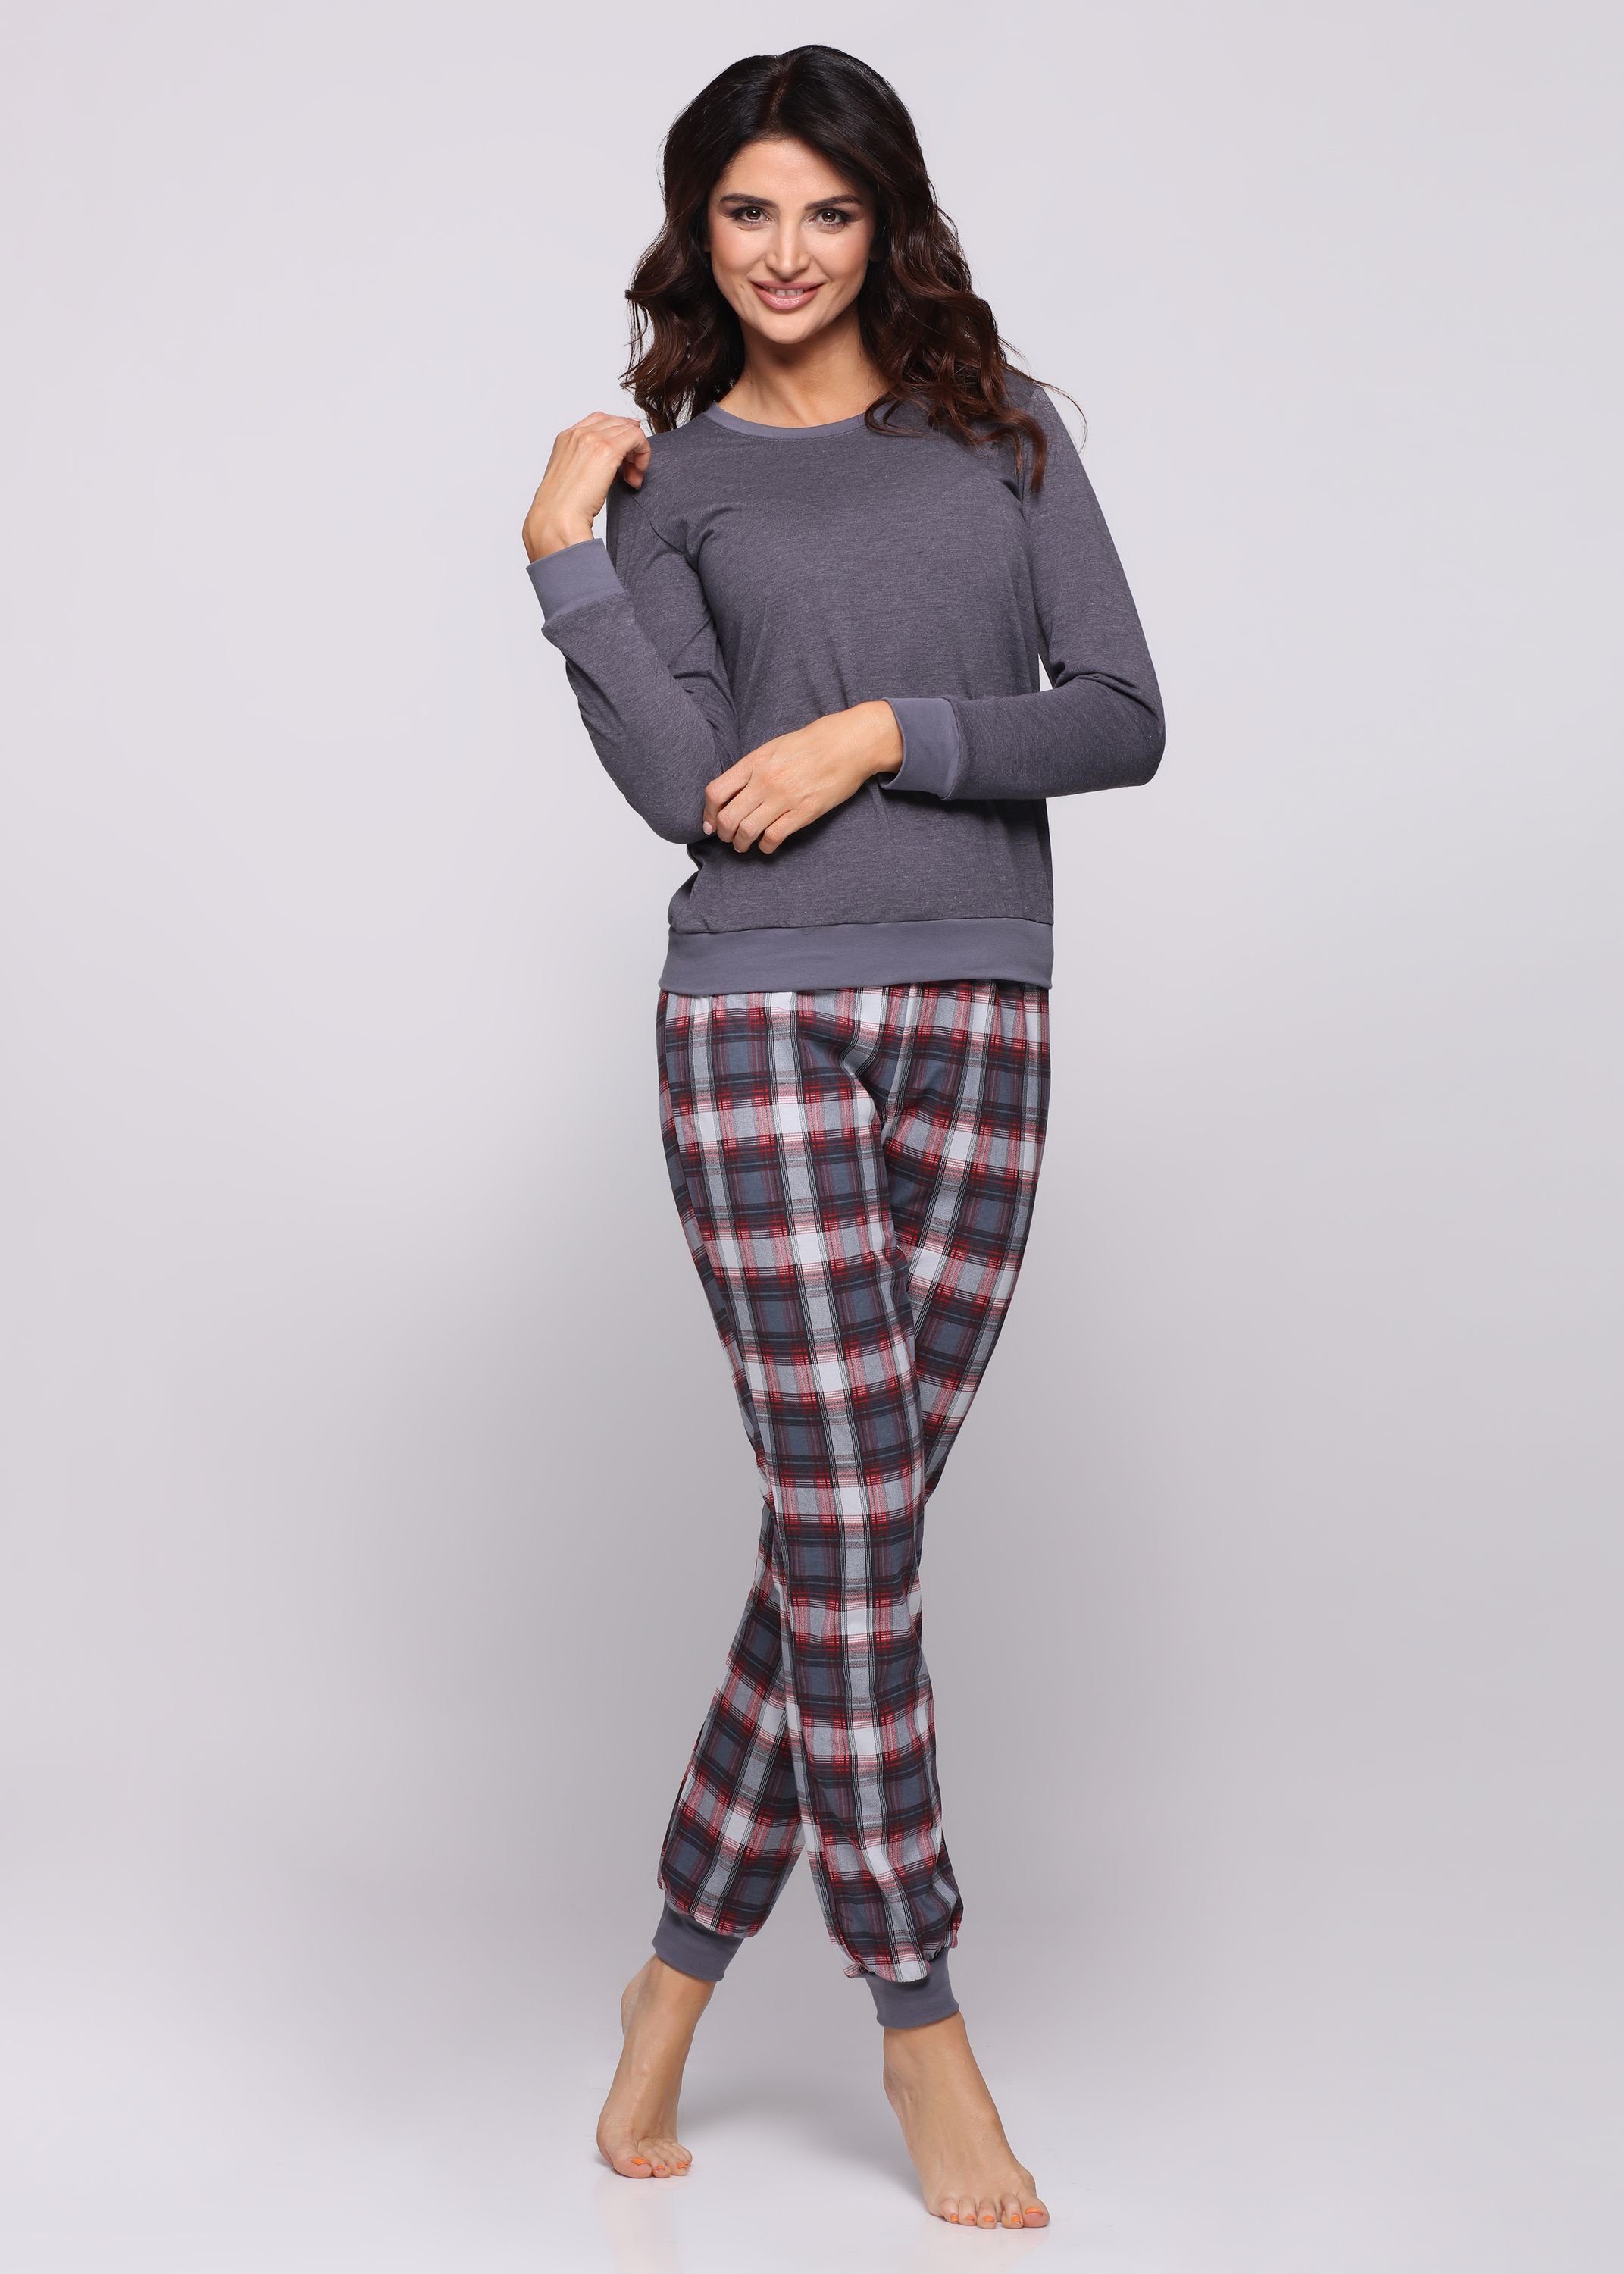 Dunkelmelange/Burgund lang Zweiteiler Muster Pyjama Style Schlafanzug bunt mit Schlafanzug Merry Damen MS10-268